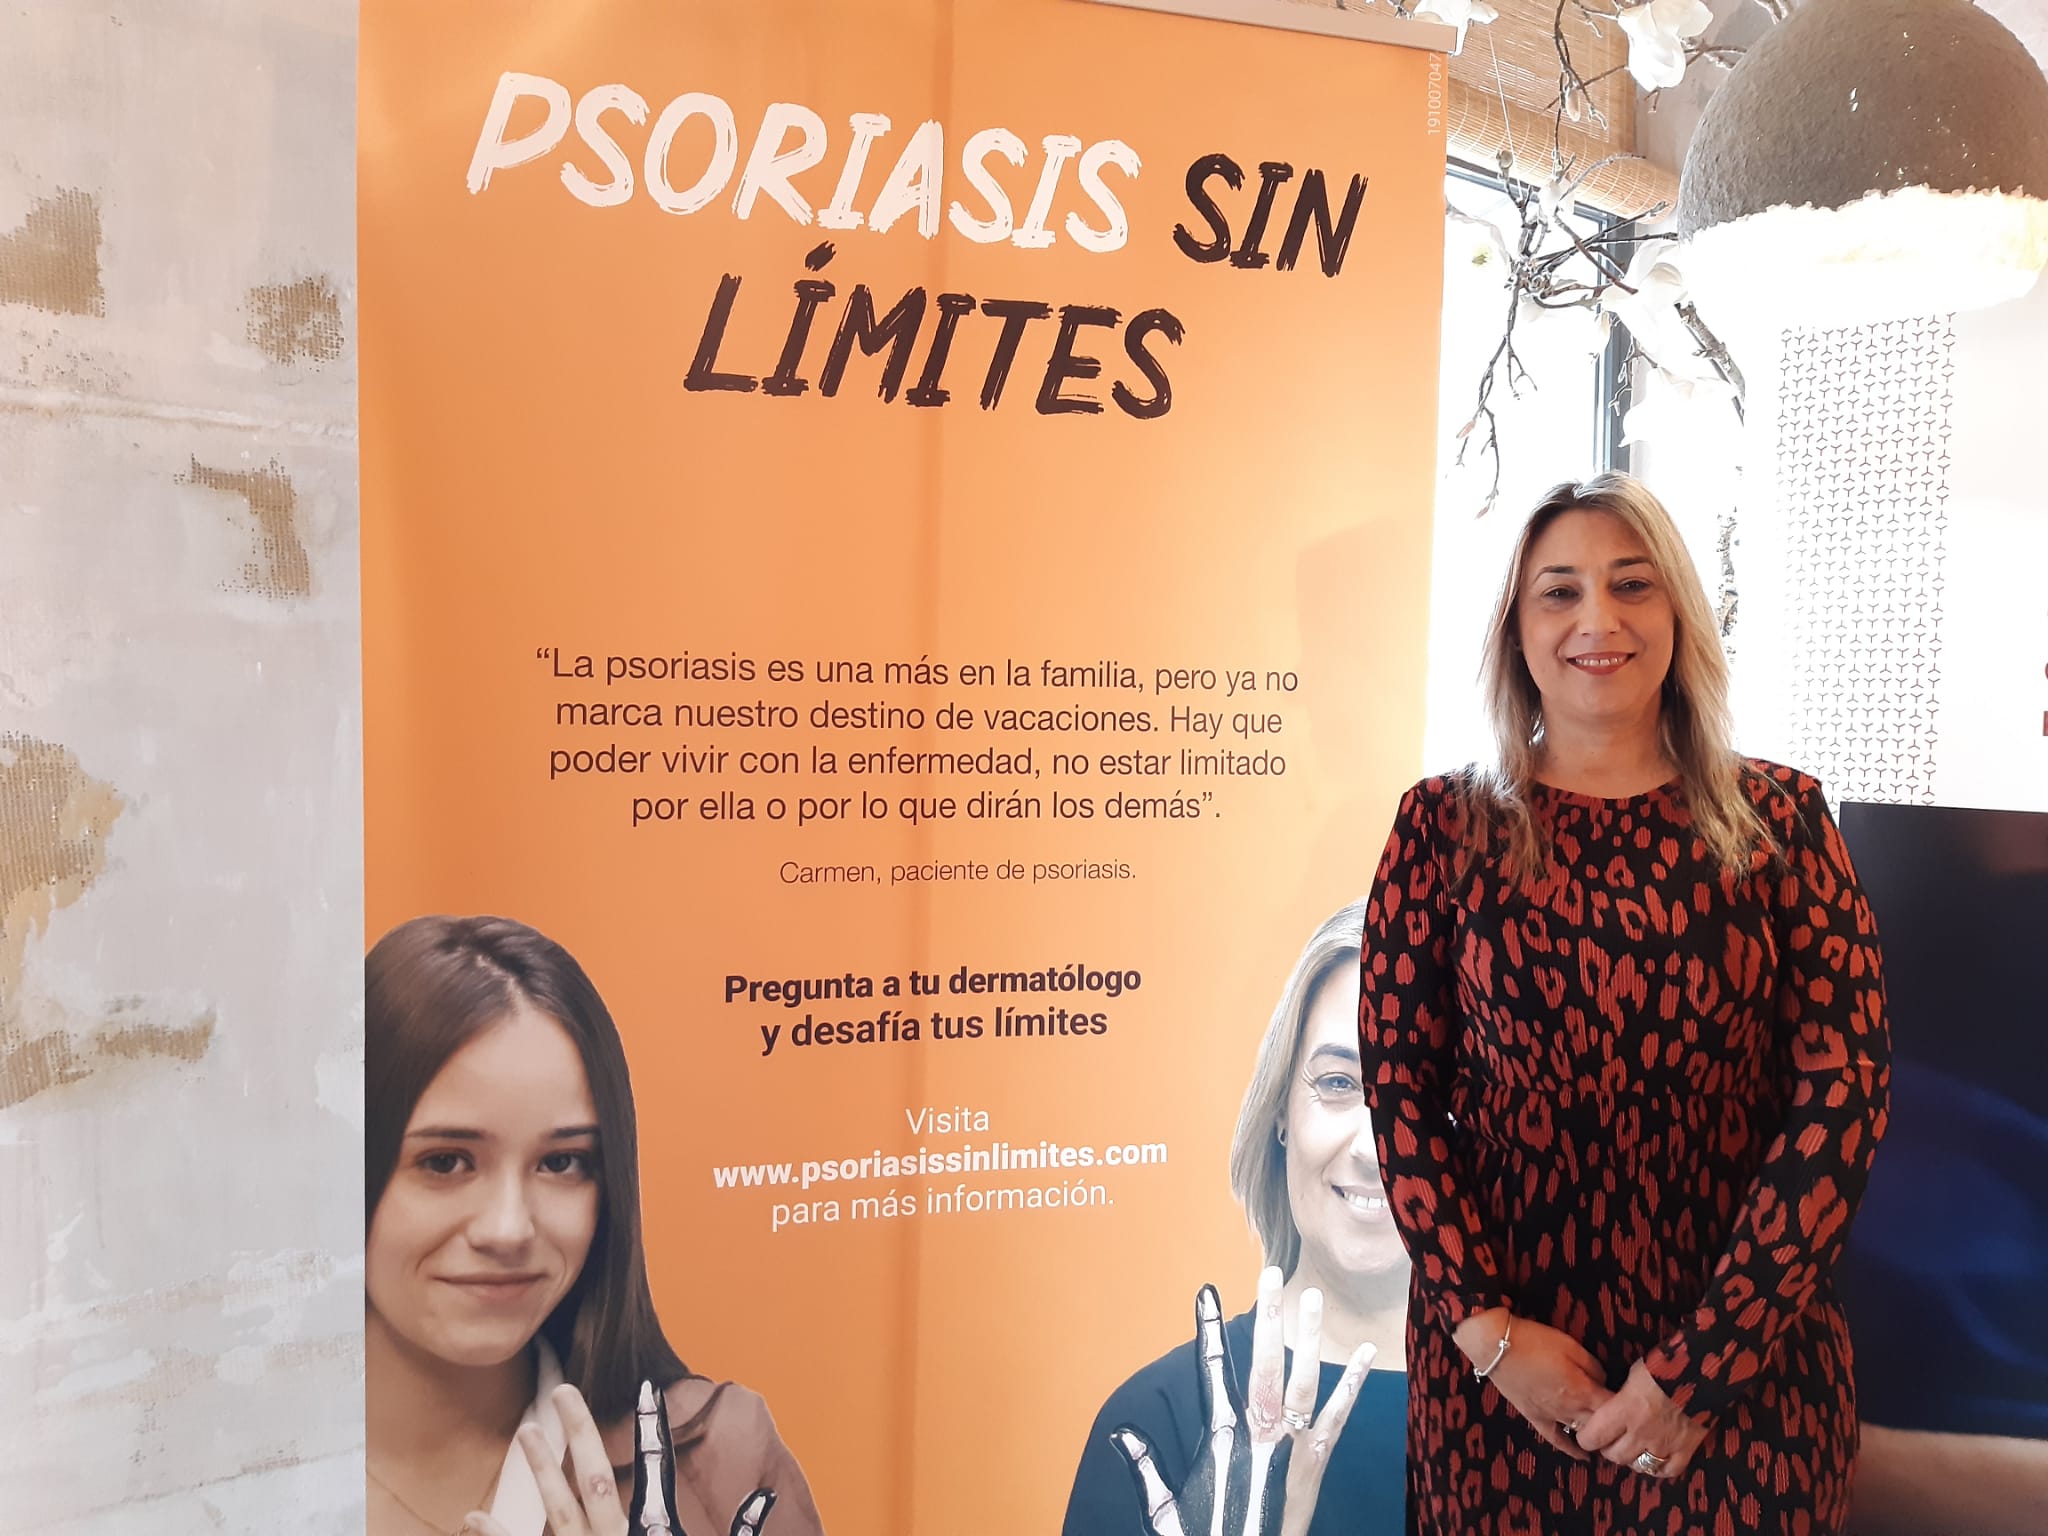 psoriasis sin limites 2 - Acción Psoriasis y Novartis lanzan la campaña "Psoriasis sin límites"